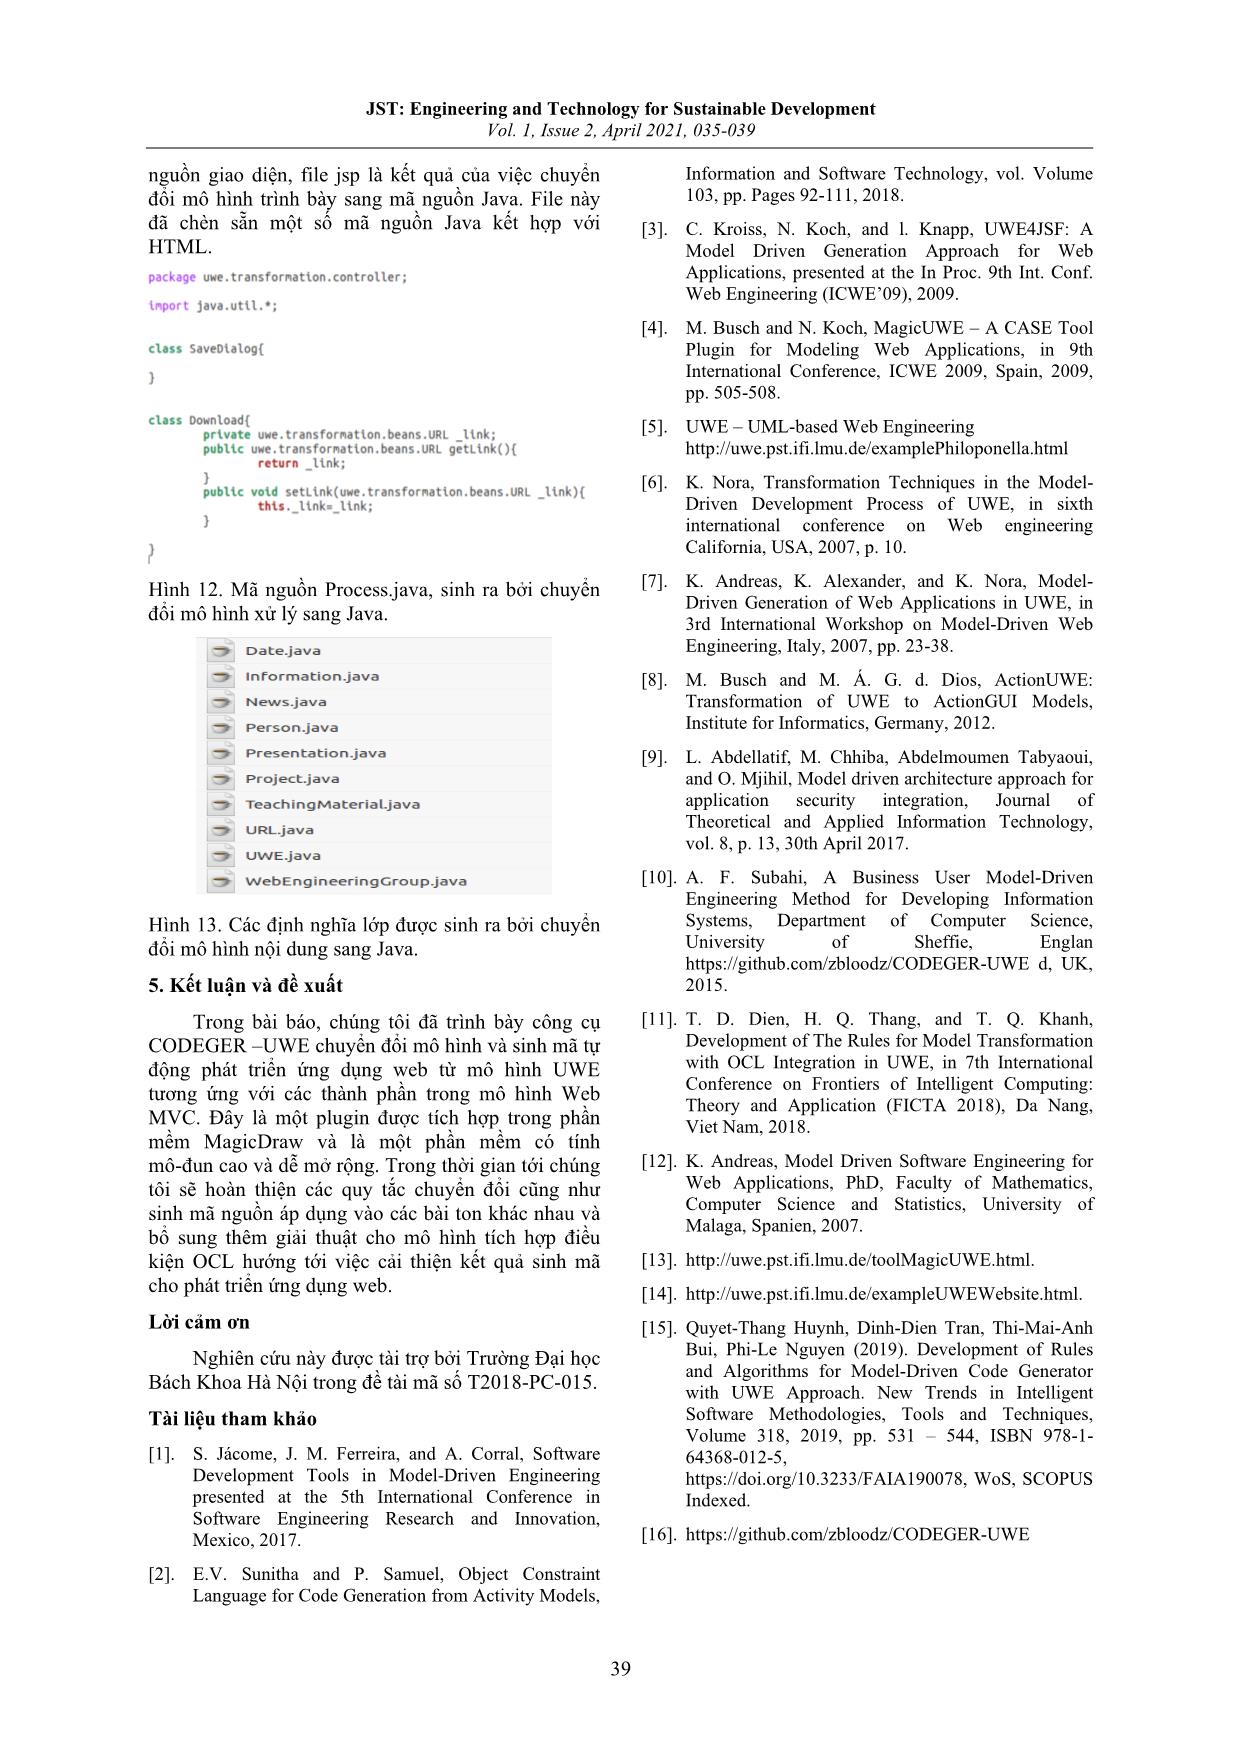 Xây dựng và thử nghiệm công cụ Codeger-Uwe phát triển ứng dụng Web hướng mô hình trang 5